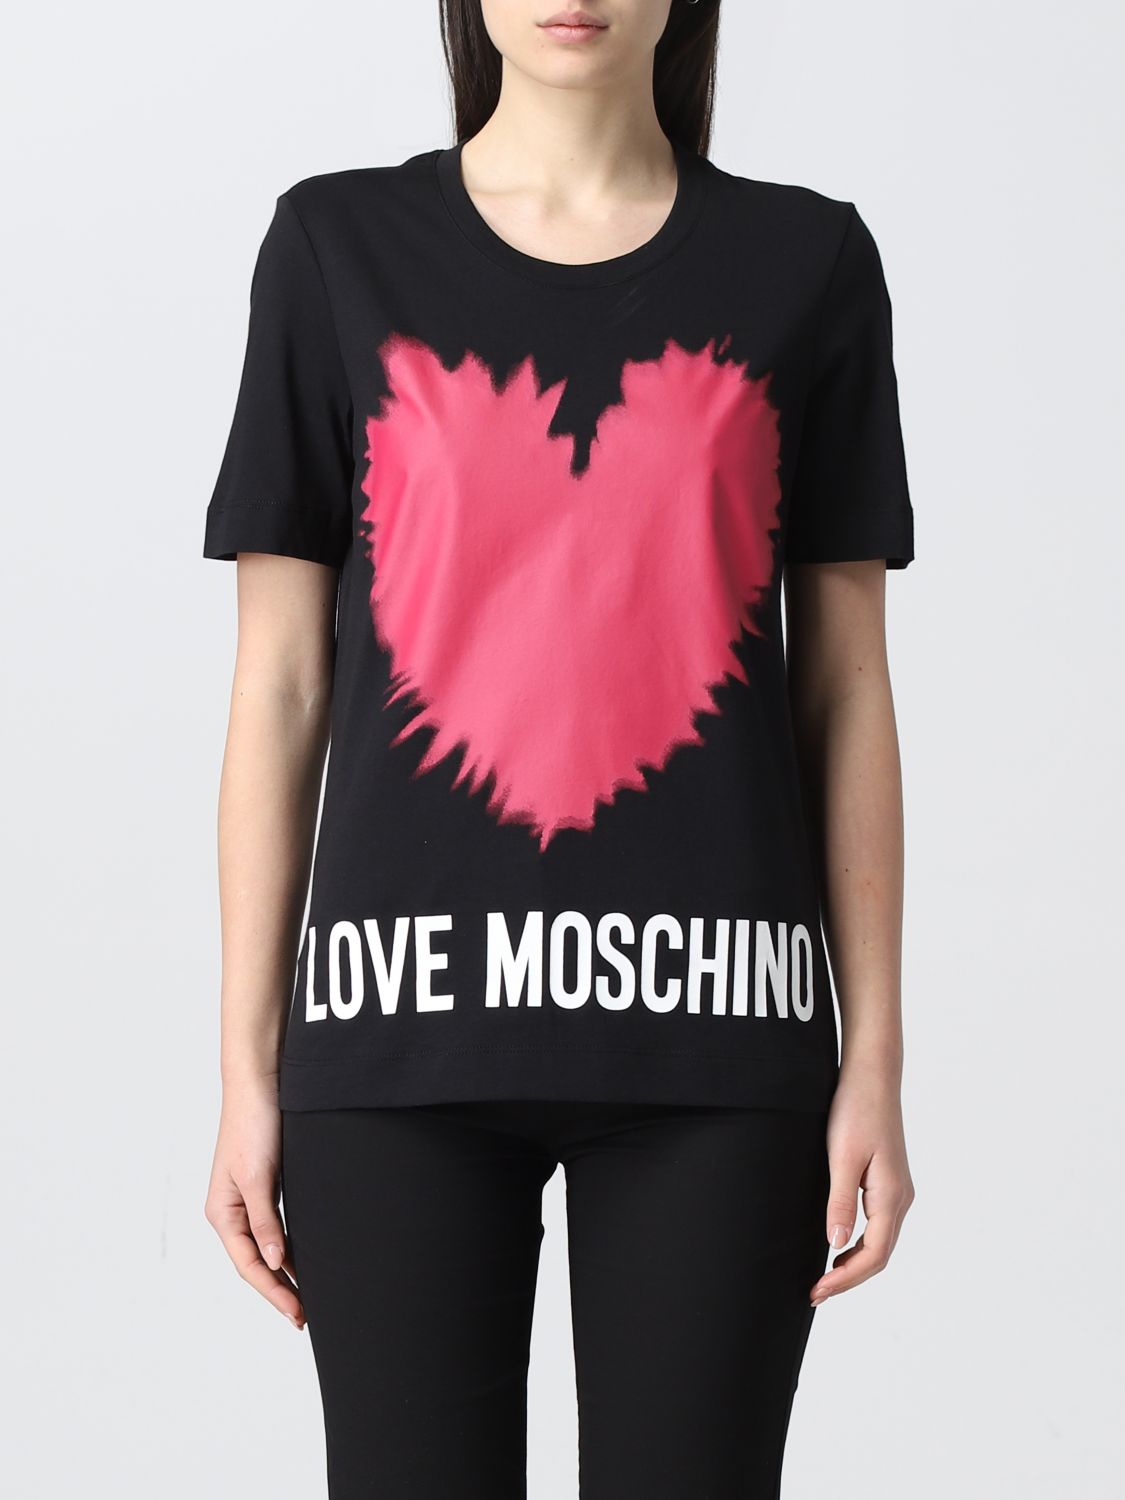 Love Moschino Short Sleeve T-Shirt Cotton BLACK white NEW Print Black Glasses 